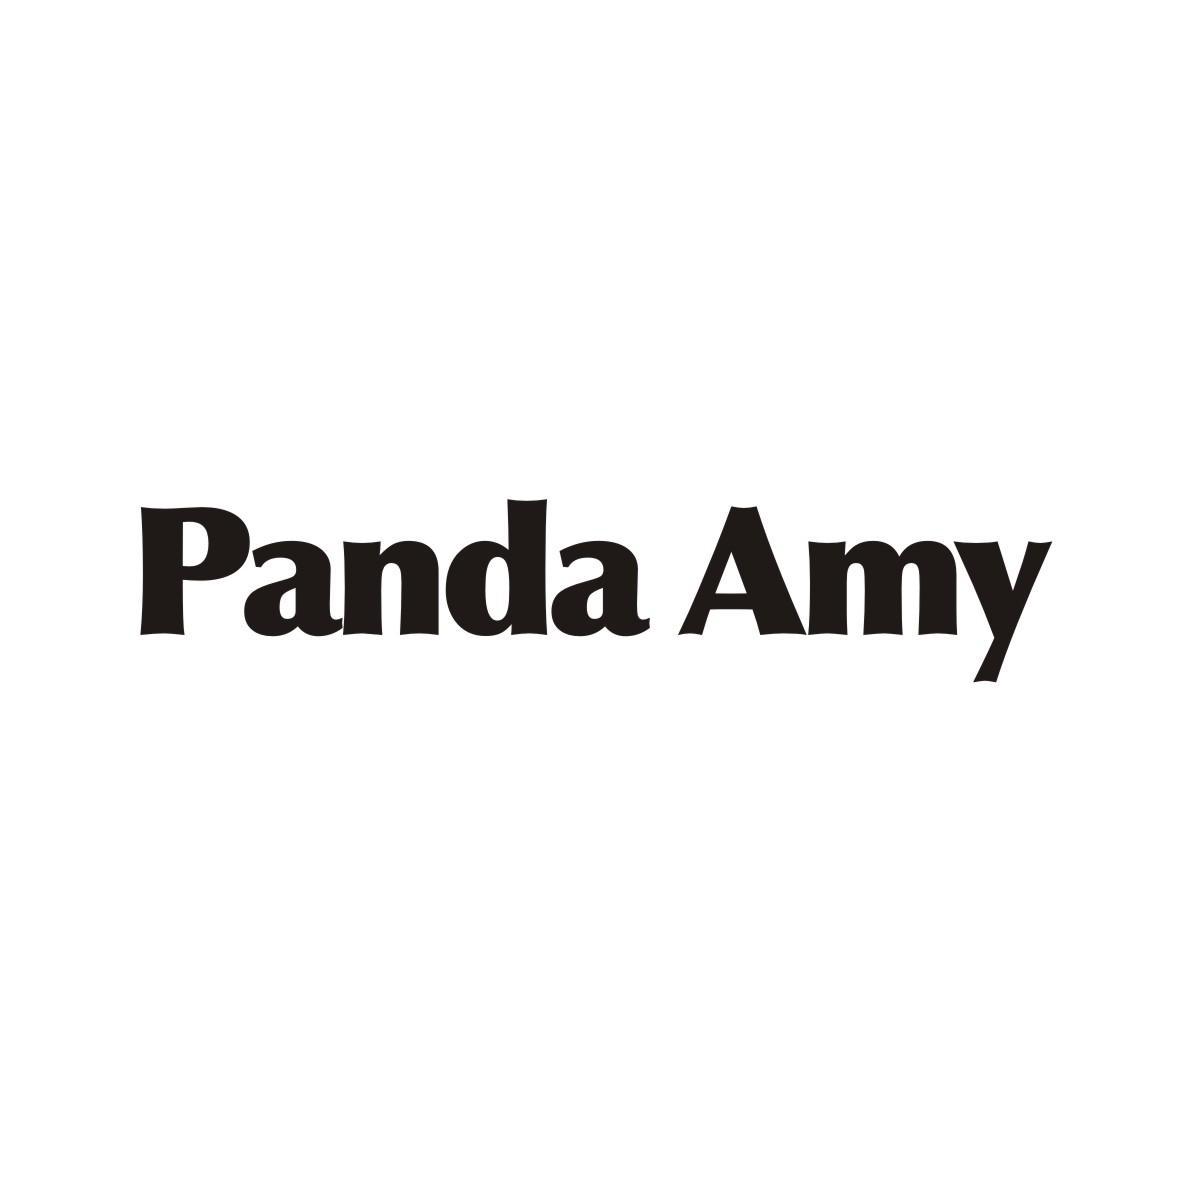 PANDA AMY